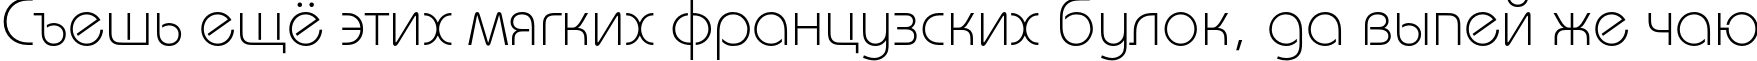 Пример написания шрифтом BauhausC Light текста на русском